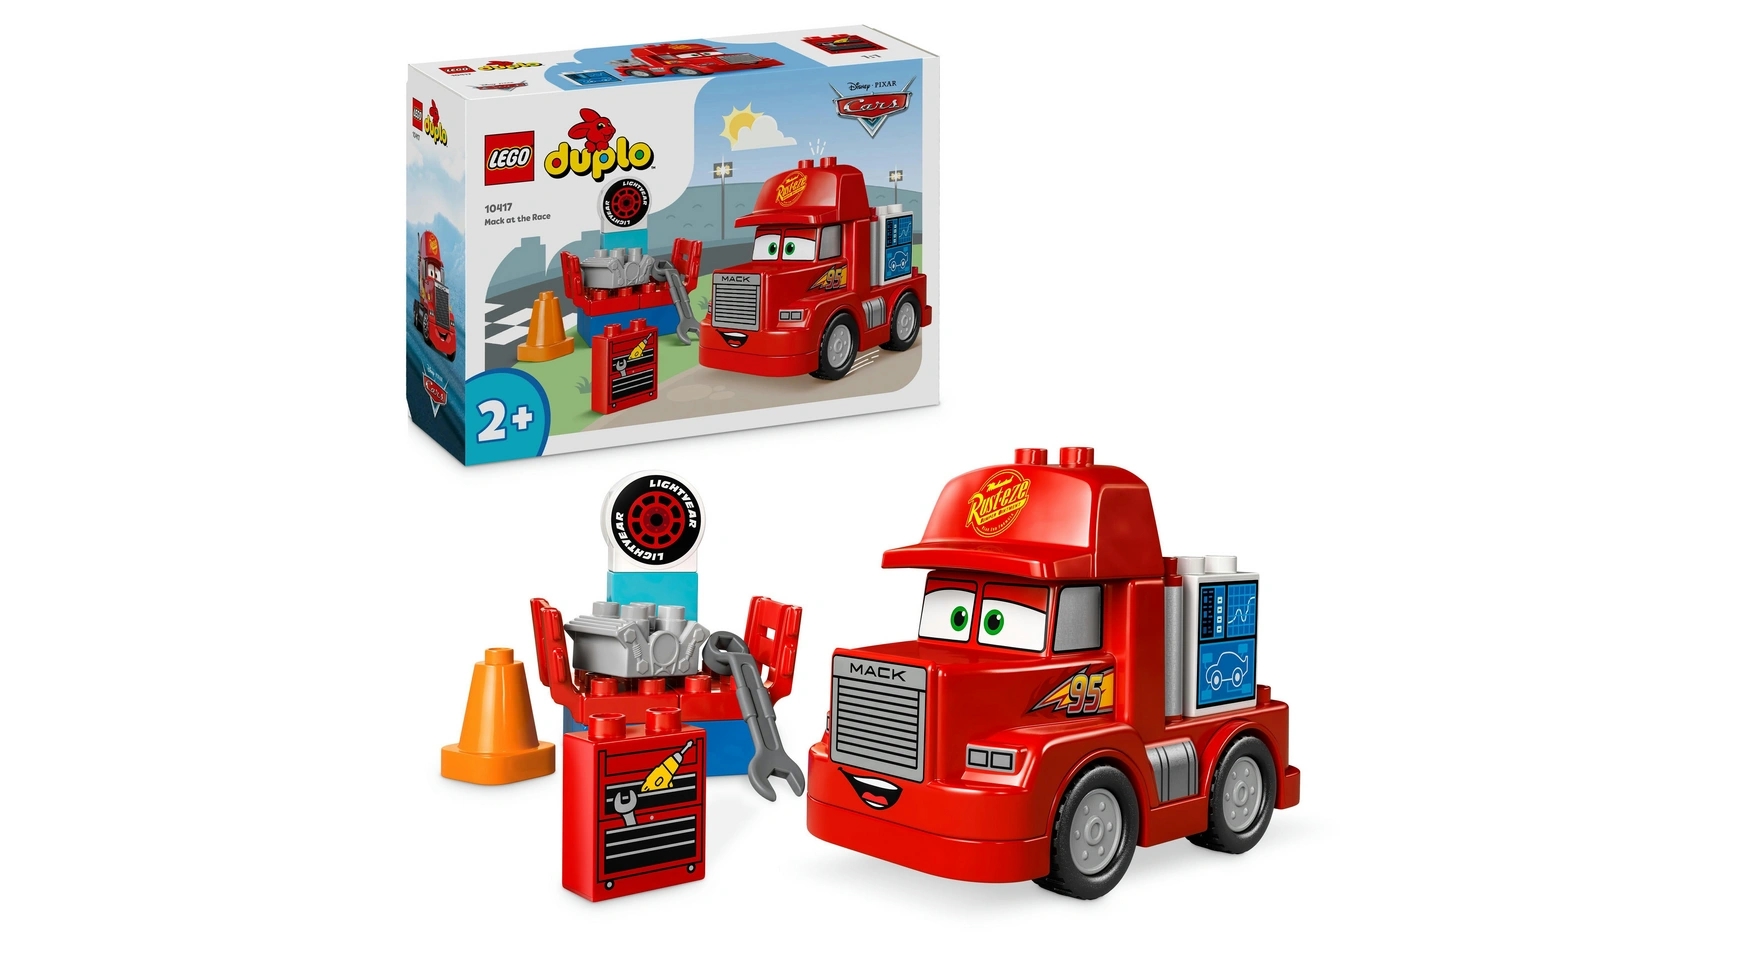 летающая тарелка disney pixar тачки v2 Lego DUPLO Гоночный грузовик Mack от Disney и Pixar Cars